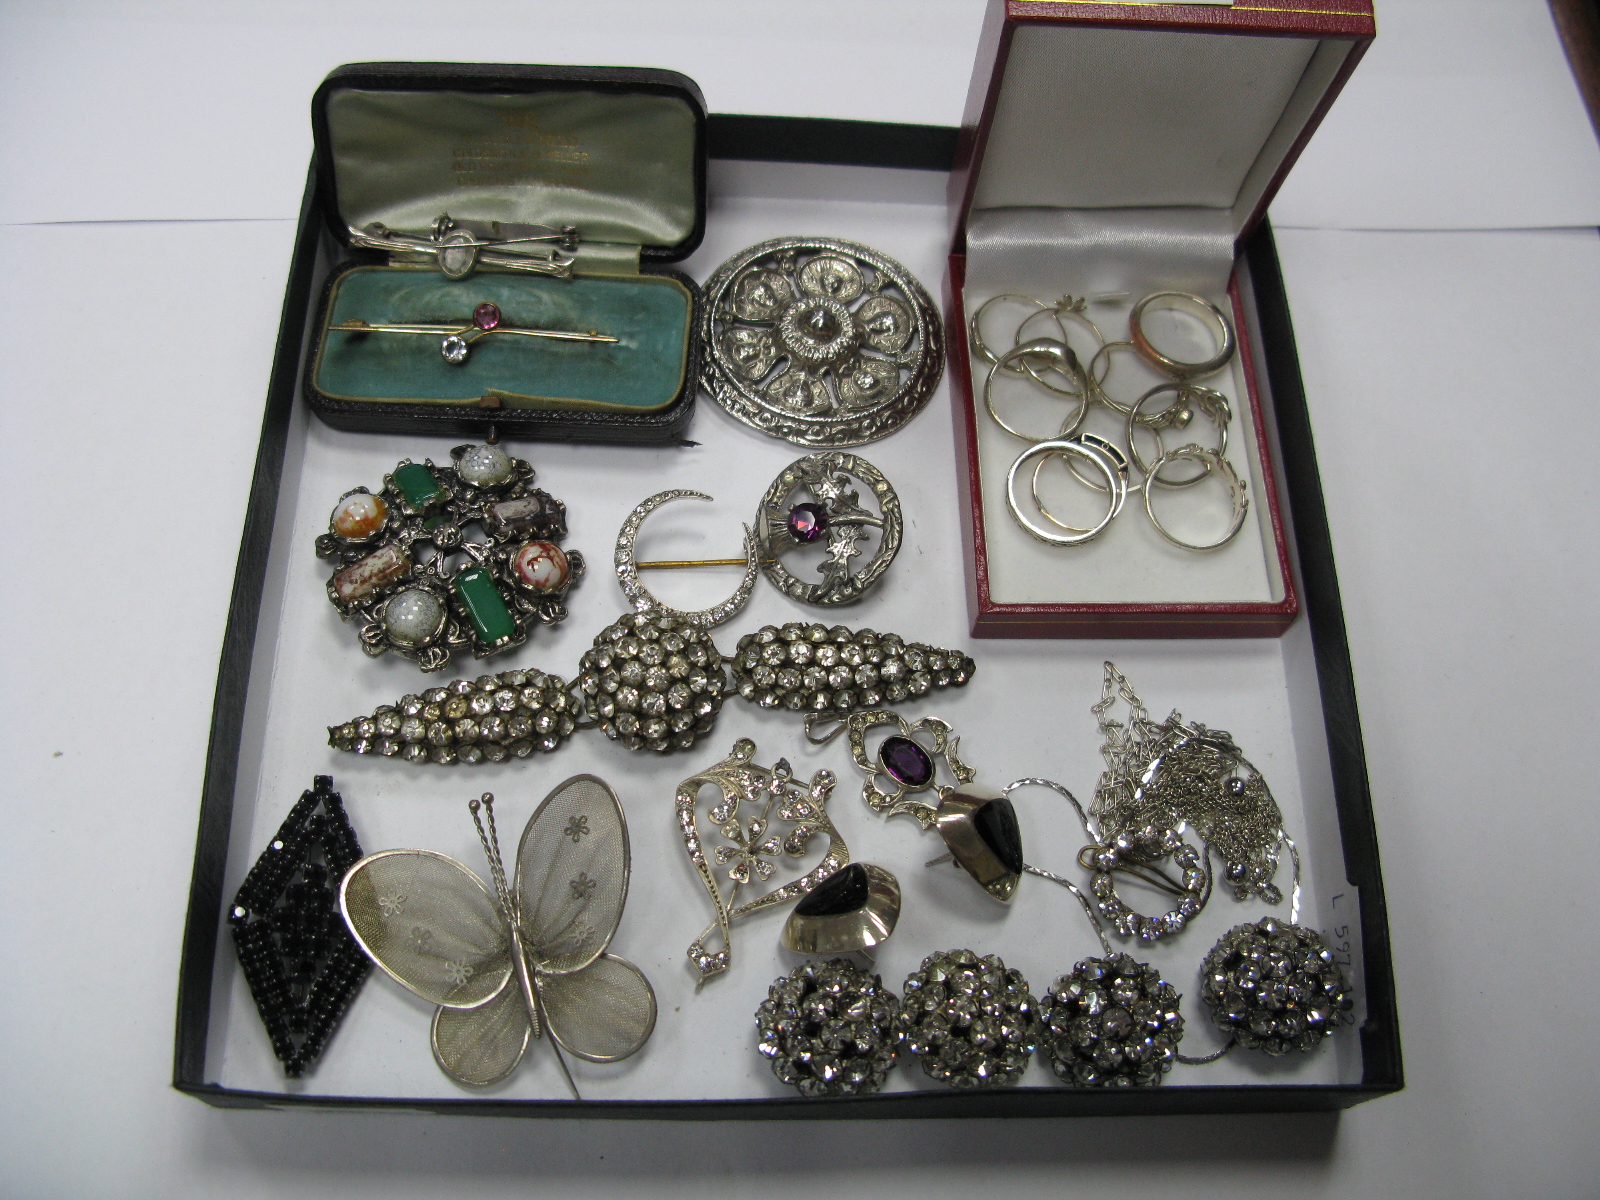 Diamanté Buttons, dress rings, brooches, Edwardian style pendant, etc.